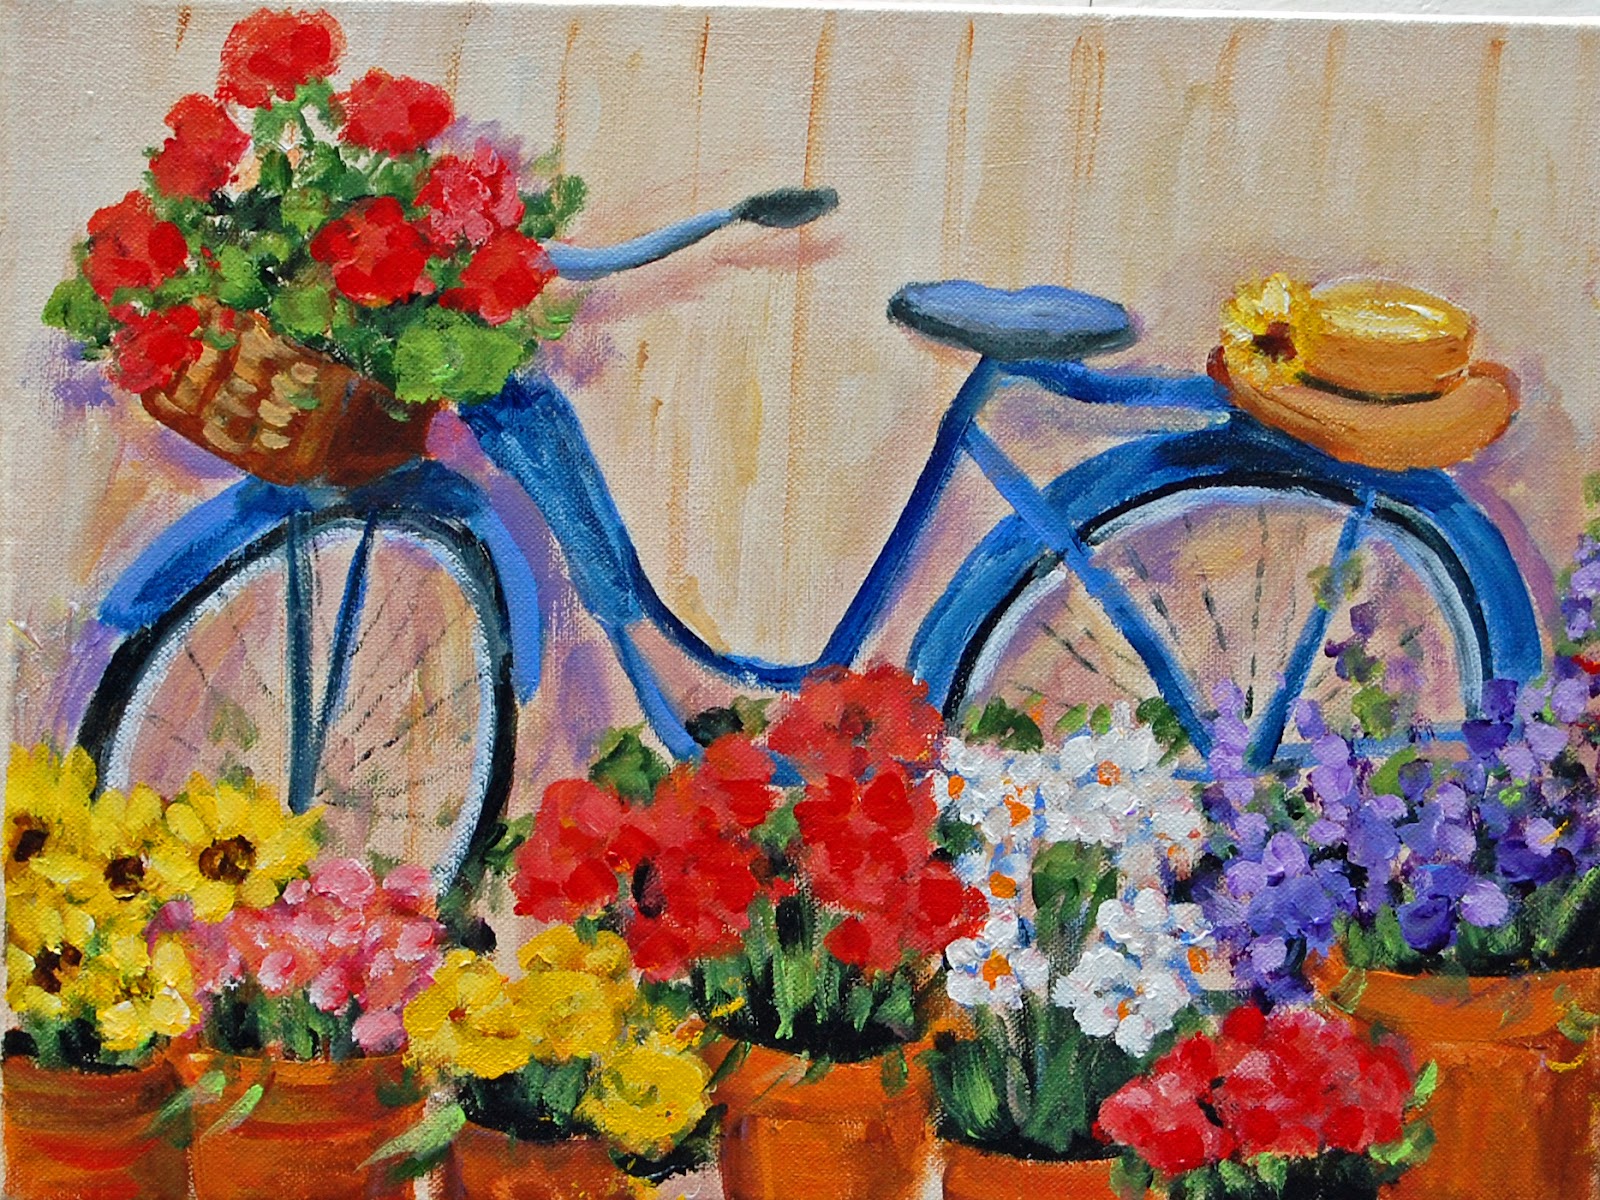 Vintage Bicycle Painting